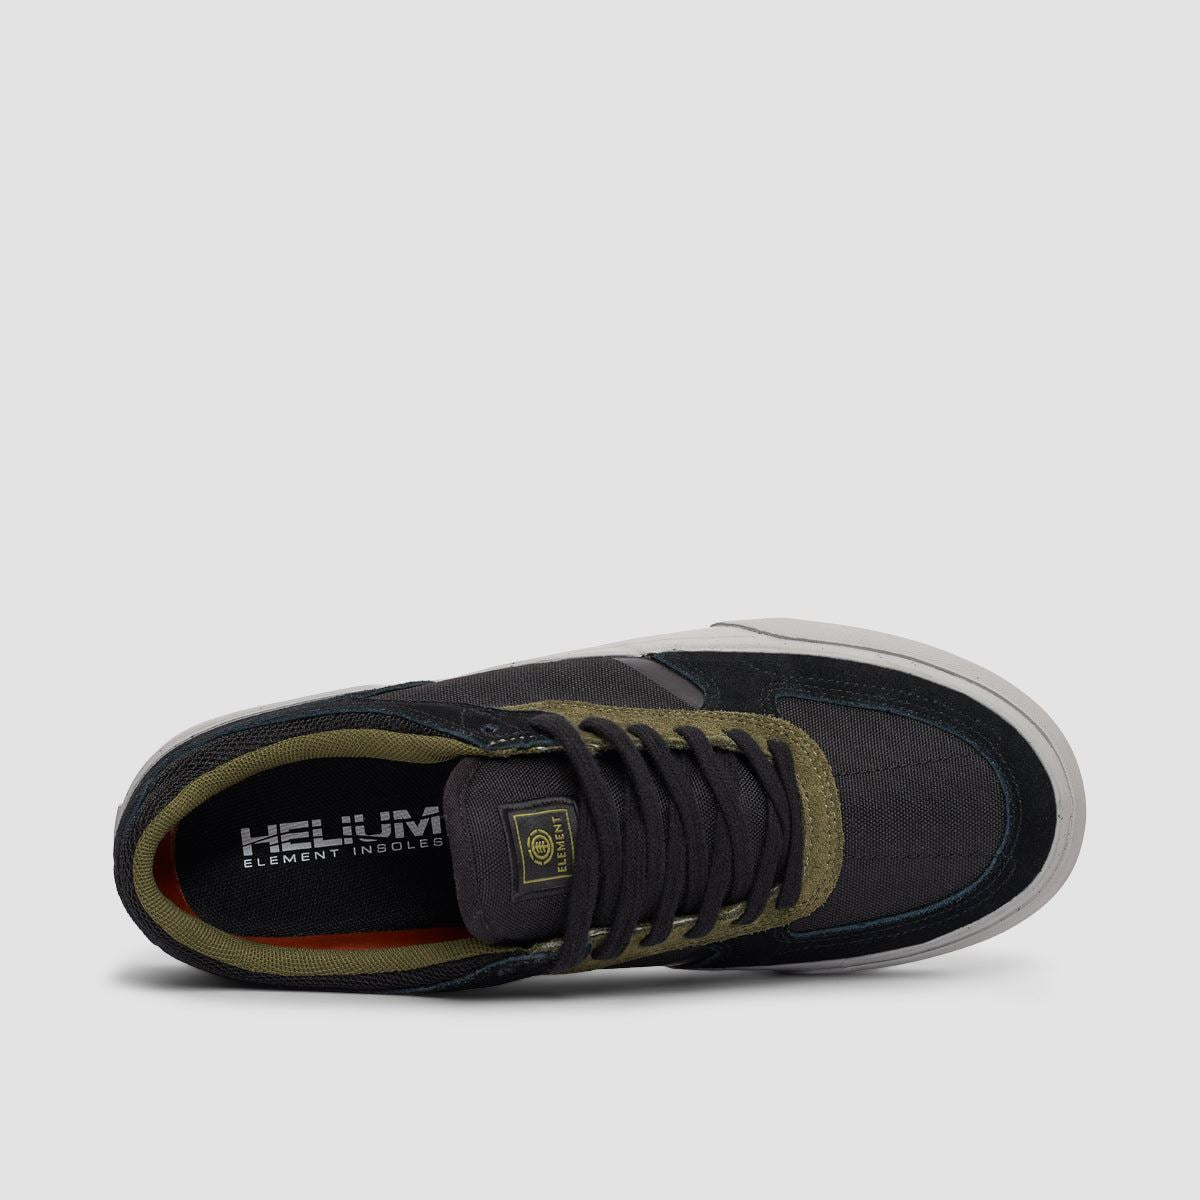 Element Heatley 2.0 Shoes - Black